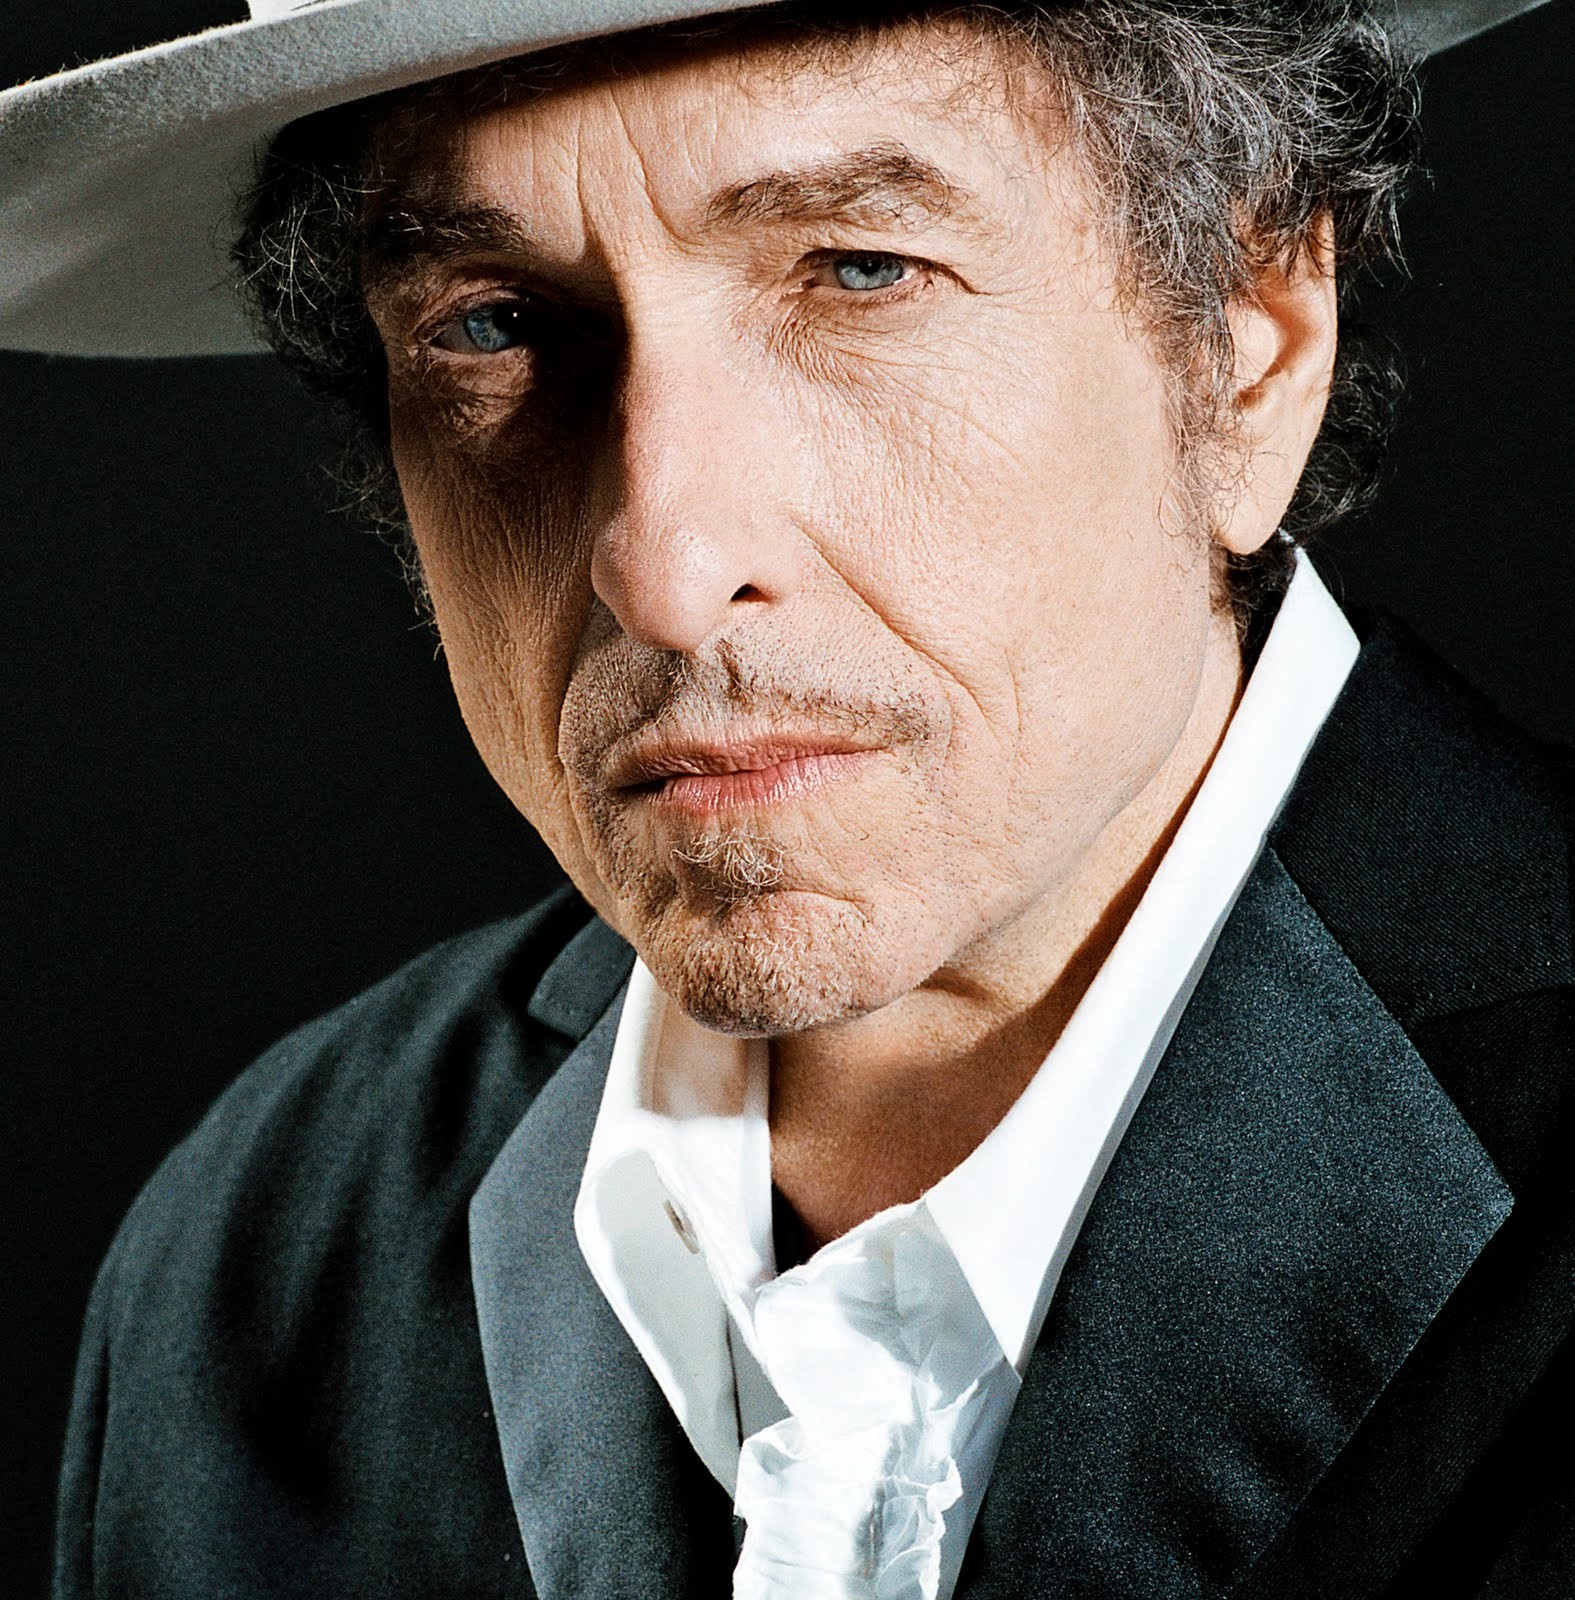 Sony Music Entertainment adquiere el catálogo completo de la música grabada de Bob Dylan